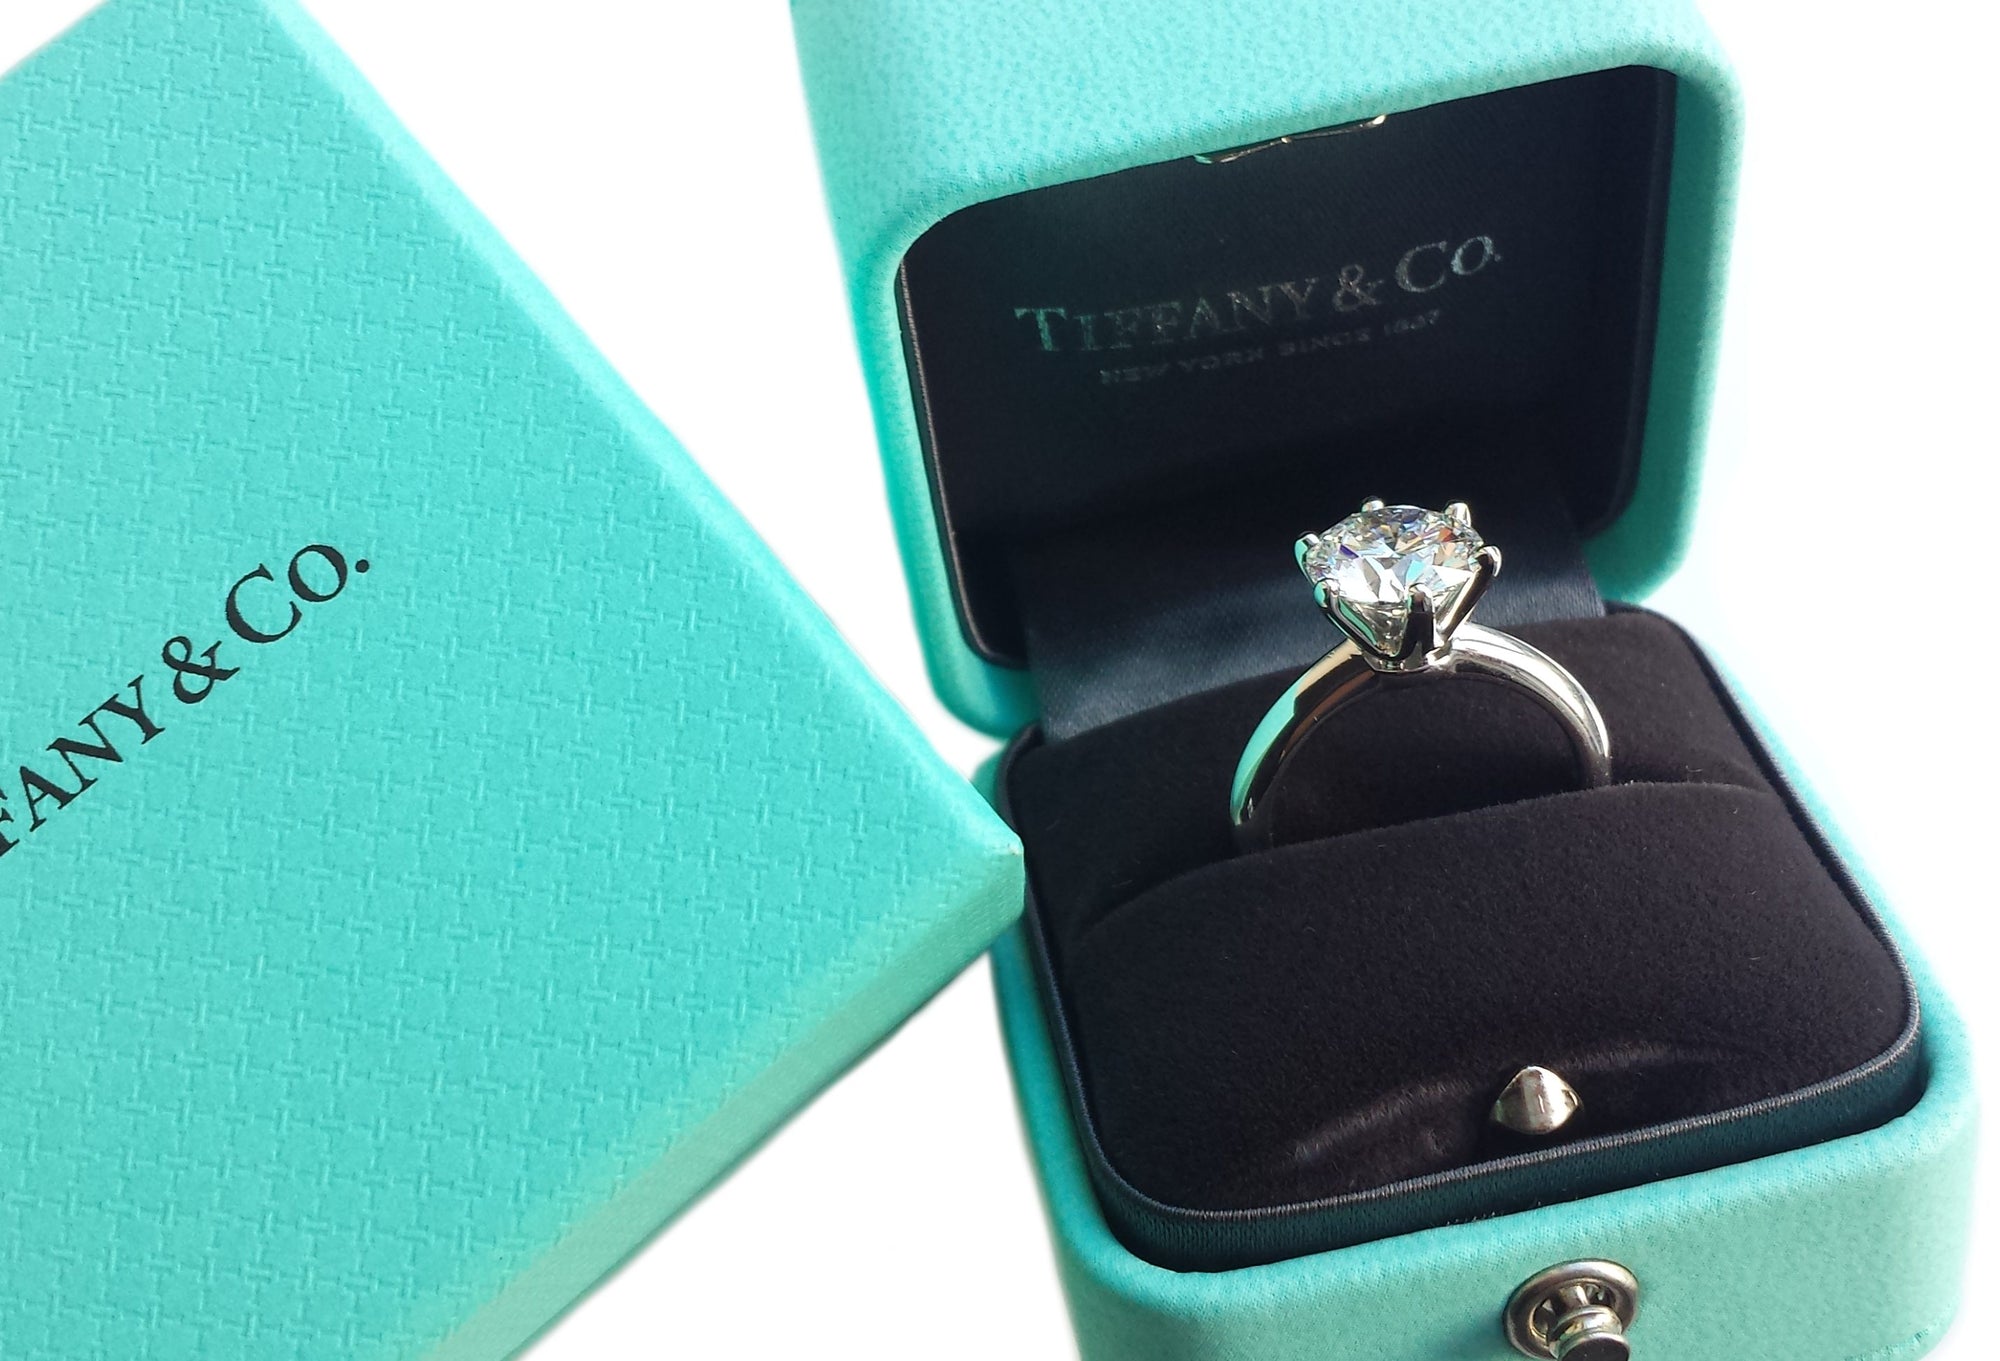 Tiffany & Co. 2.56ct E/VS1 Triple XXX Round Brilliant Cut Diamond Engagement Ring in box